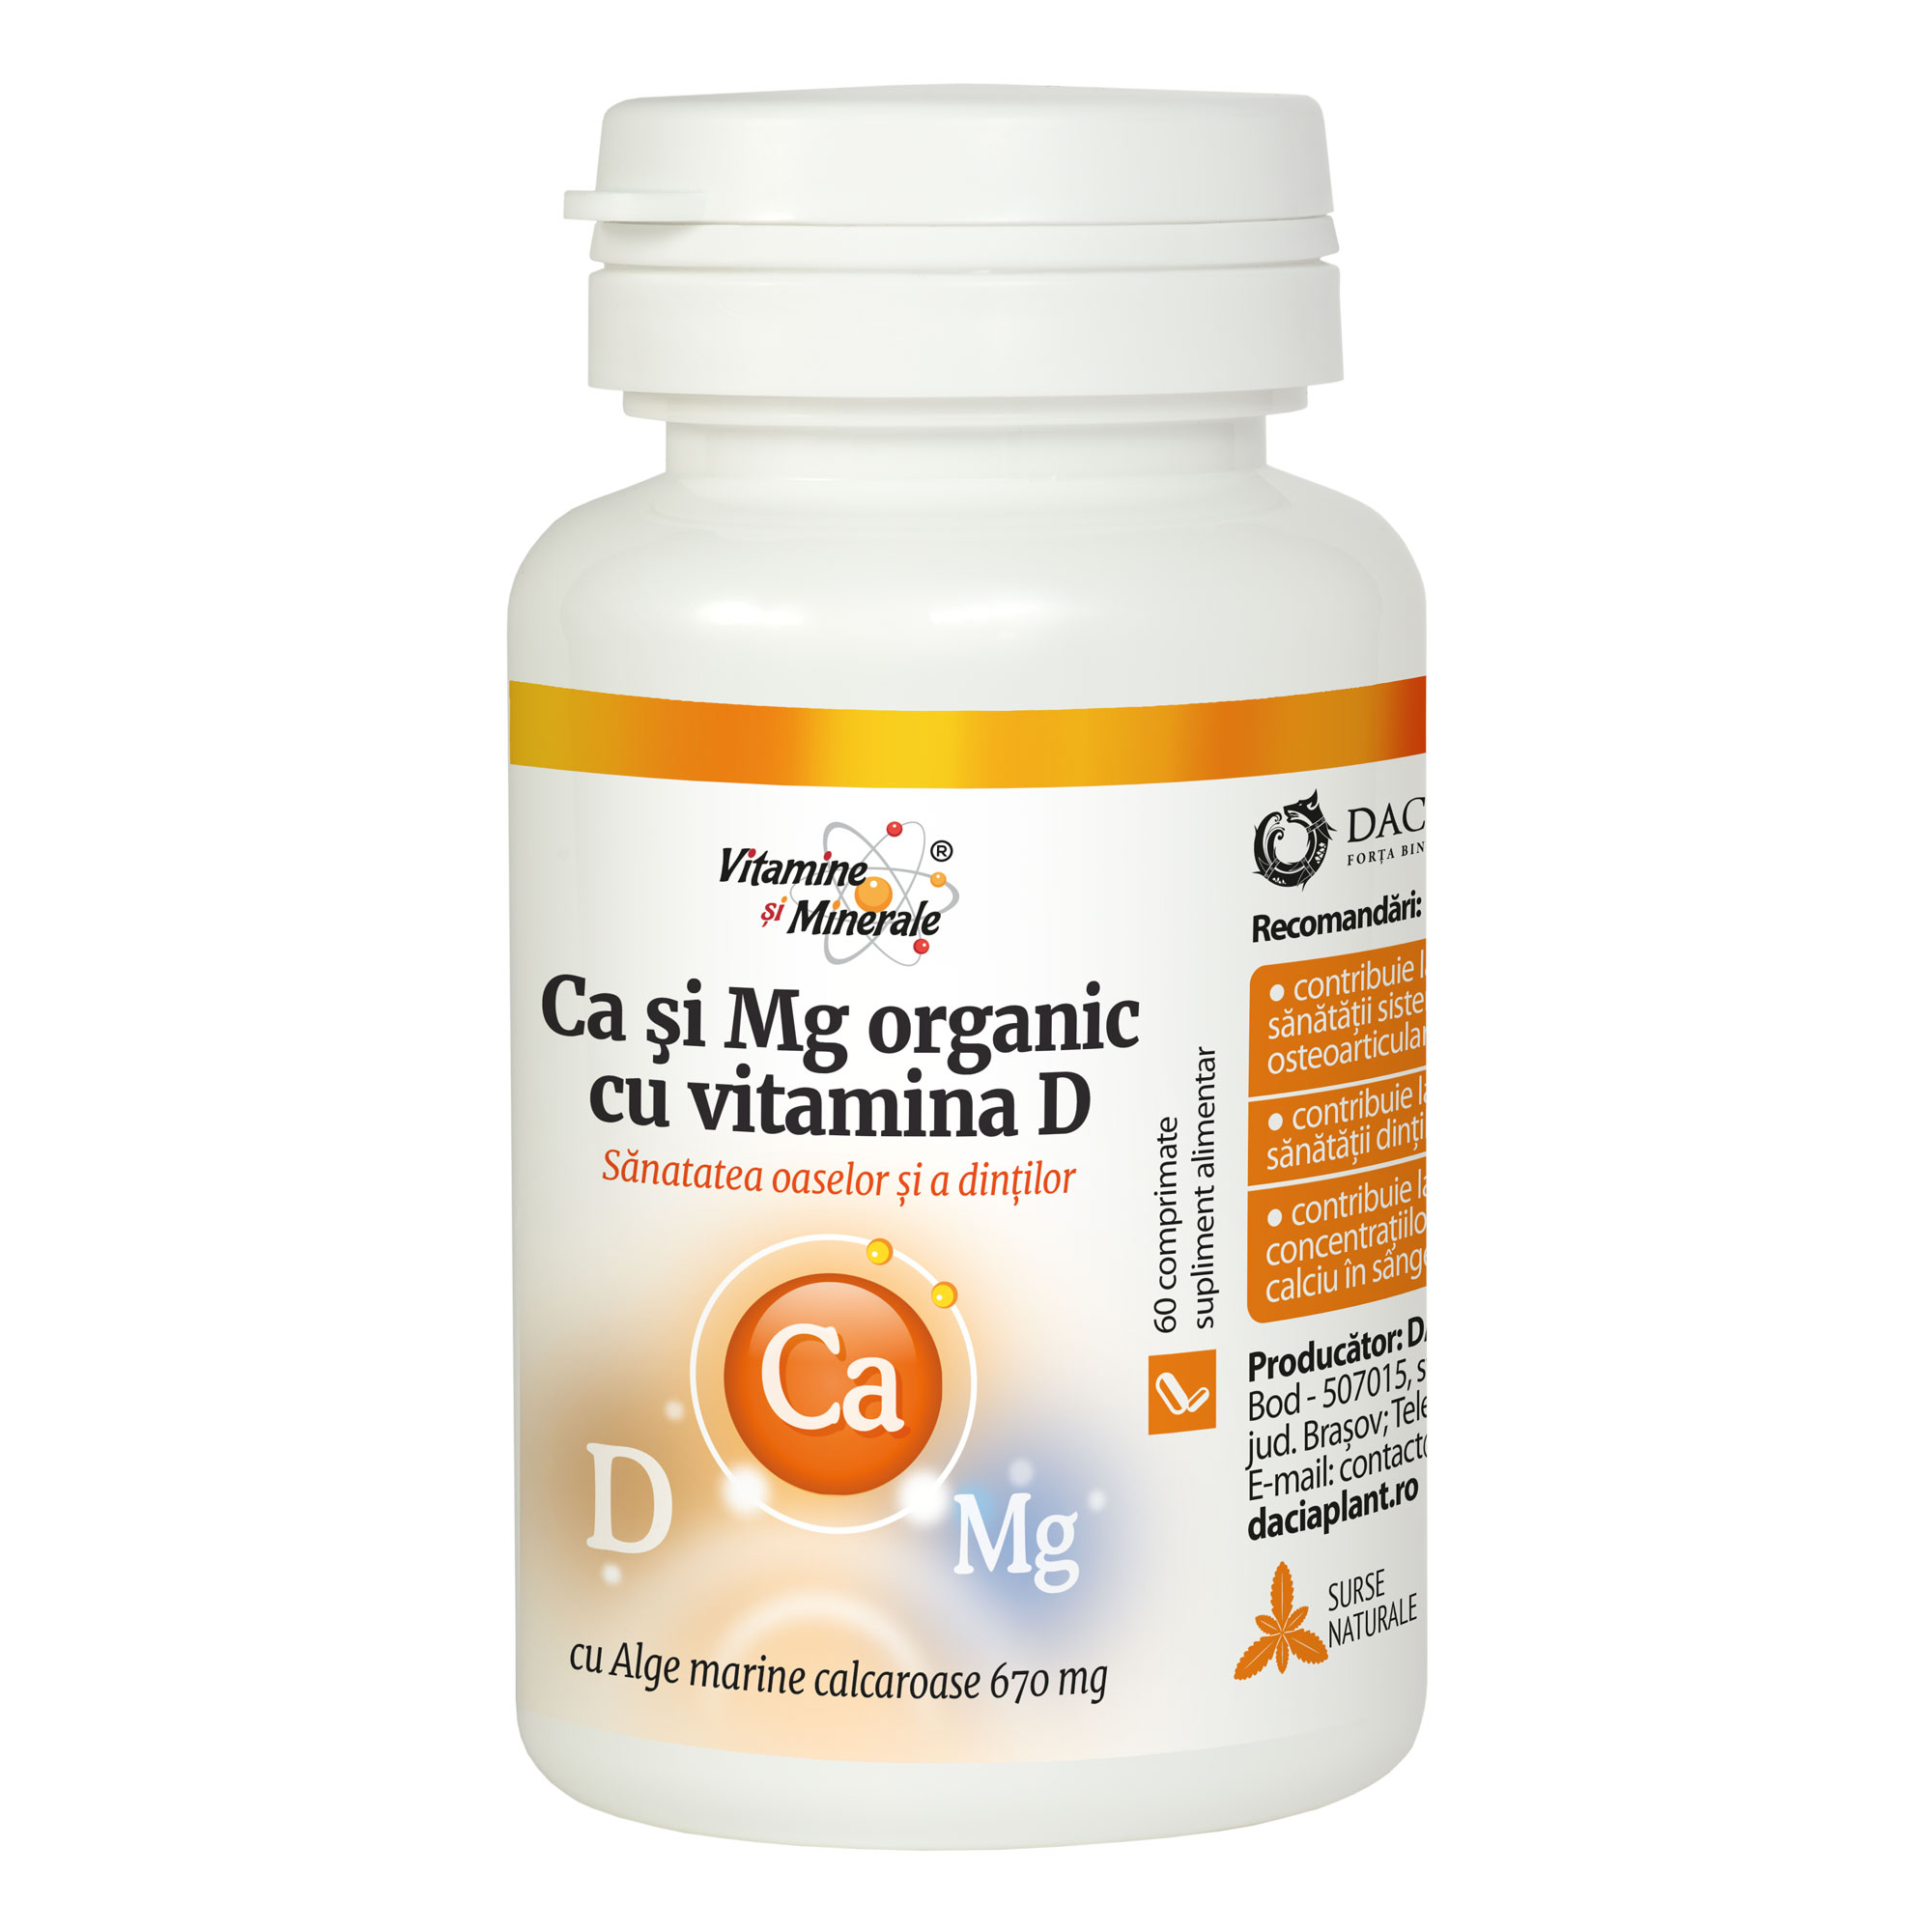 Ca si Mg Organic cu Vitamina D comprimate daciaplant.ro imagine noua